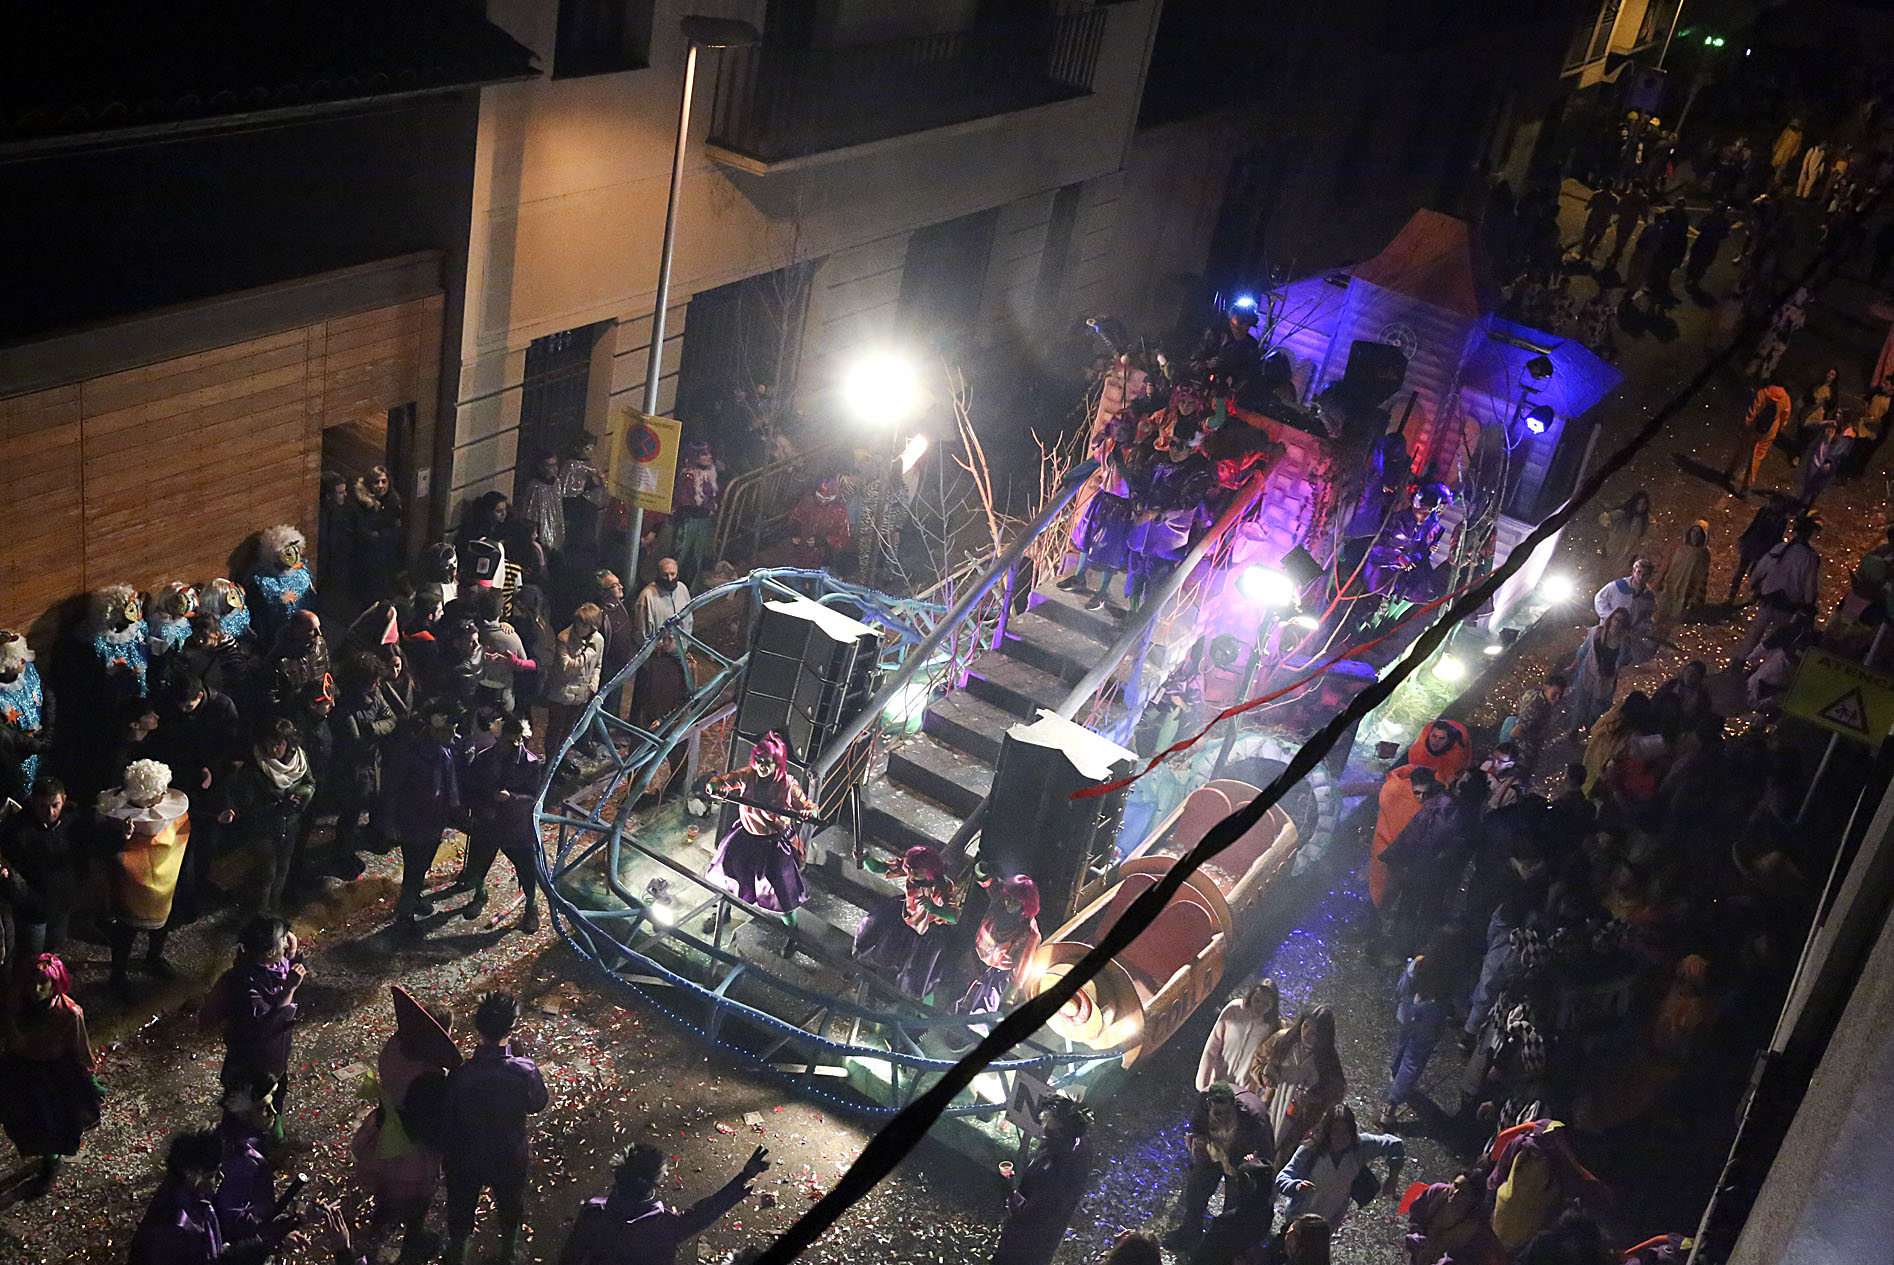 Una de les carrosses que va participar al carnaval de Torelló dissabte a la nit